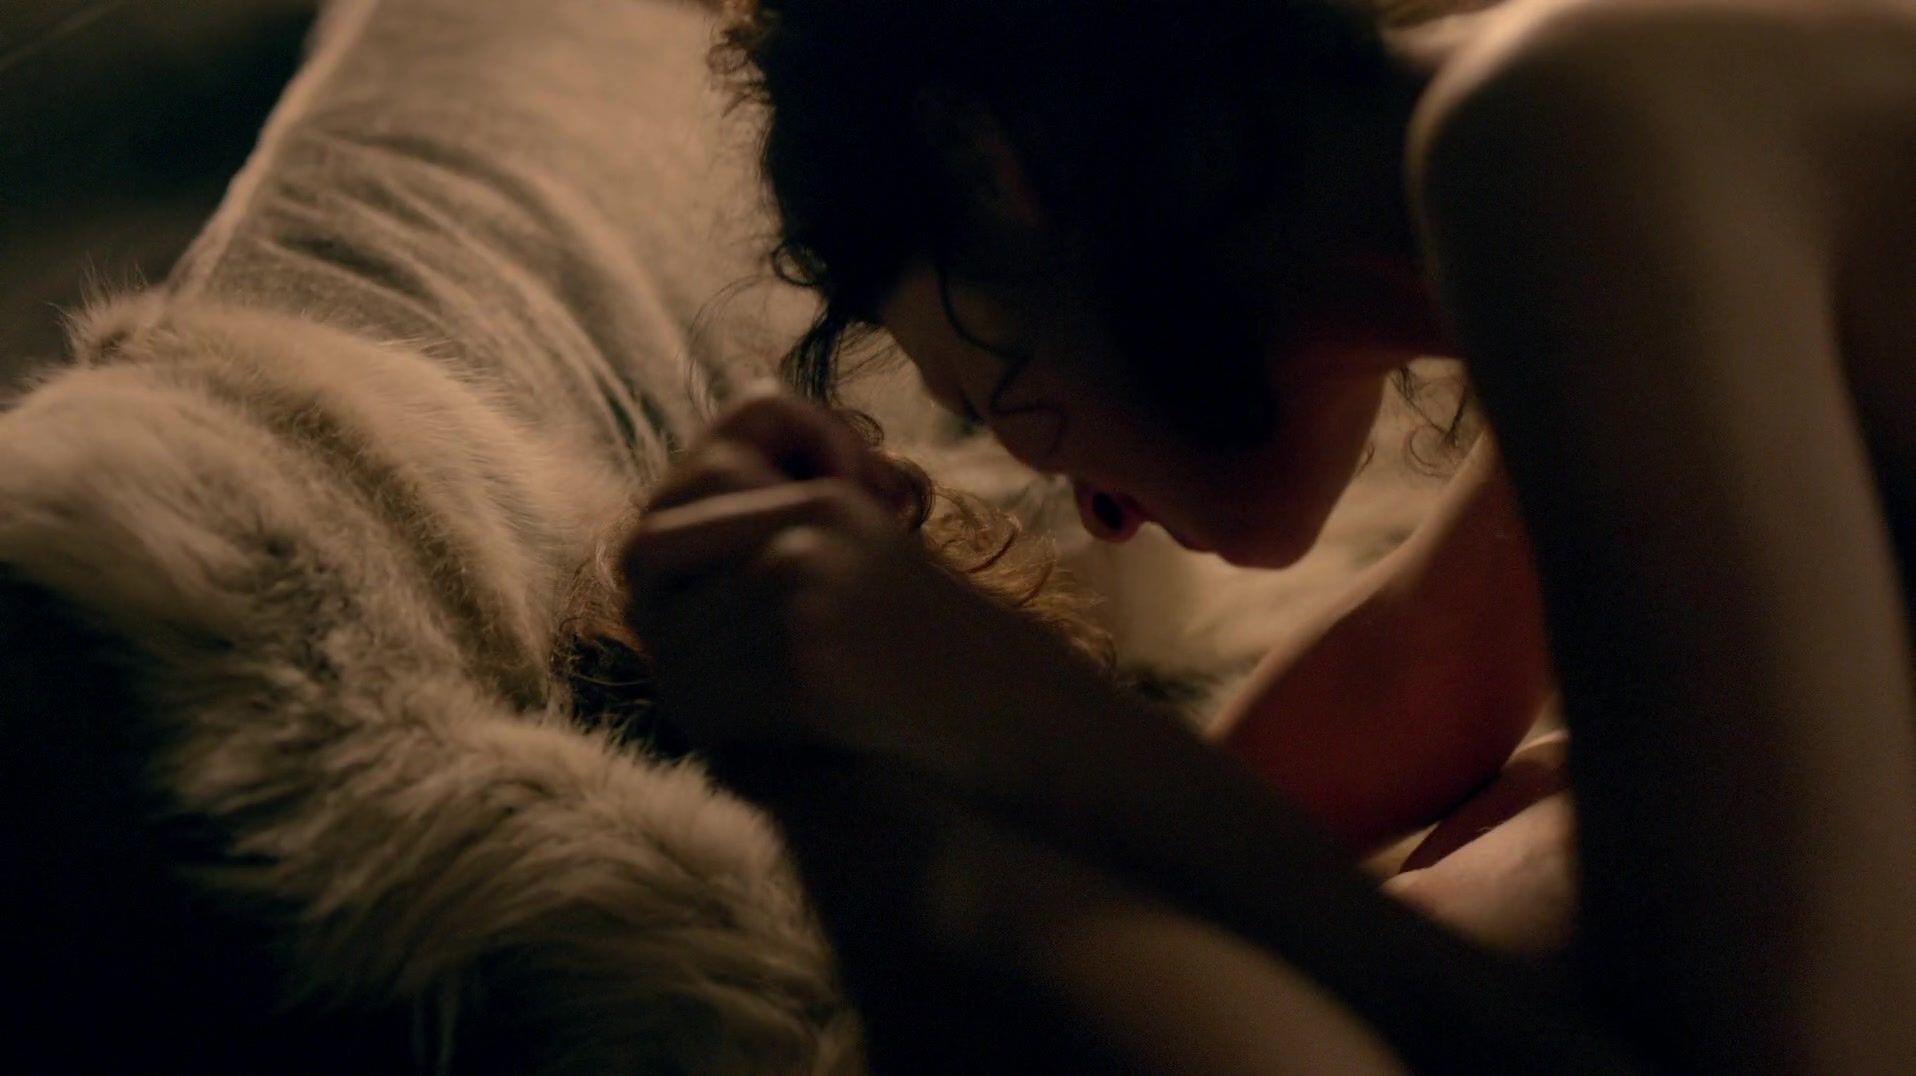 Masturbate Sex scene of naked Caitriona Balfe | TV show "Outlander" Stockings